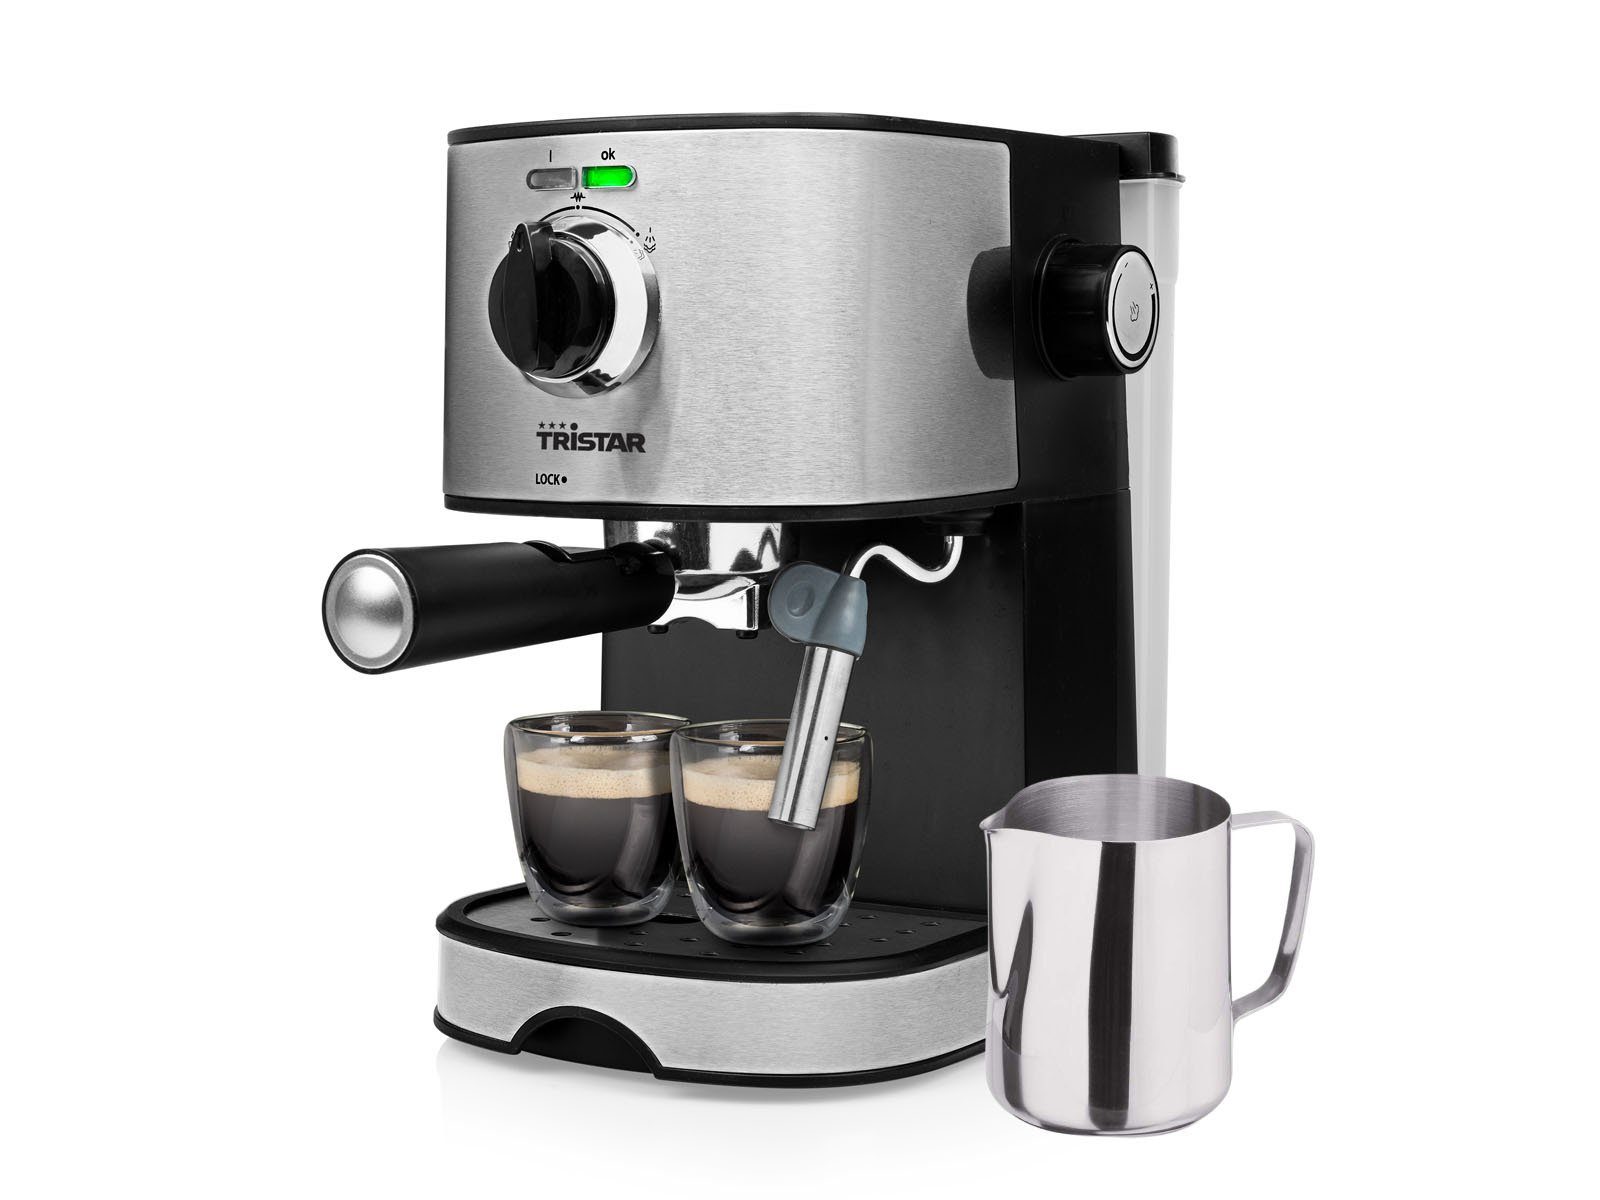 Tristar Espressomaschine, italienische Siebdruck Kaffee &  Siebträger-Maschine mit Milchaufschäumer für Latte Macchiato & Cappuccino  Espressokocher online kaufen | OTTO